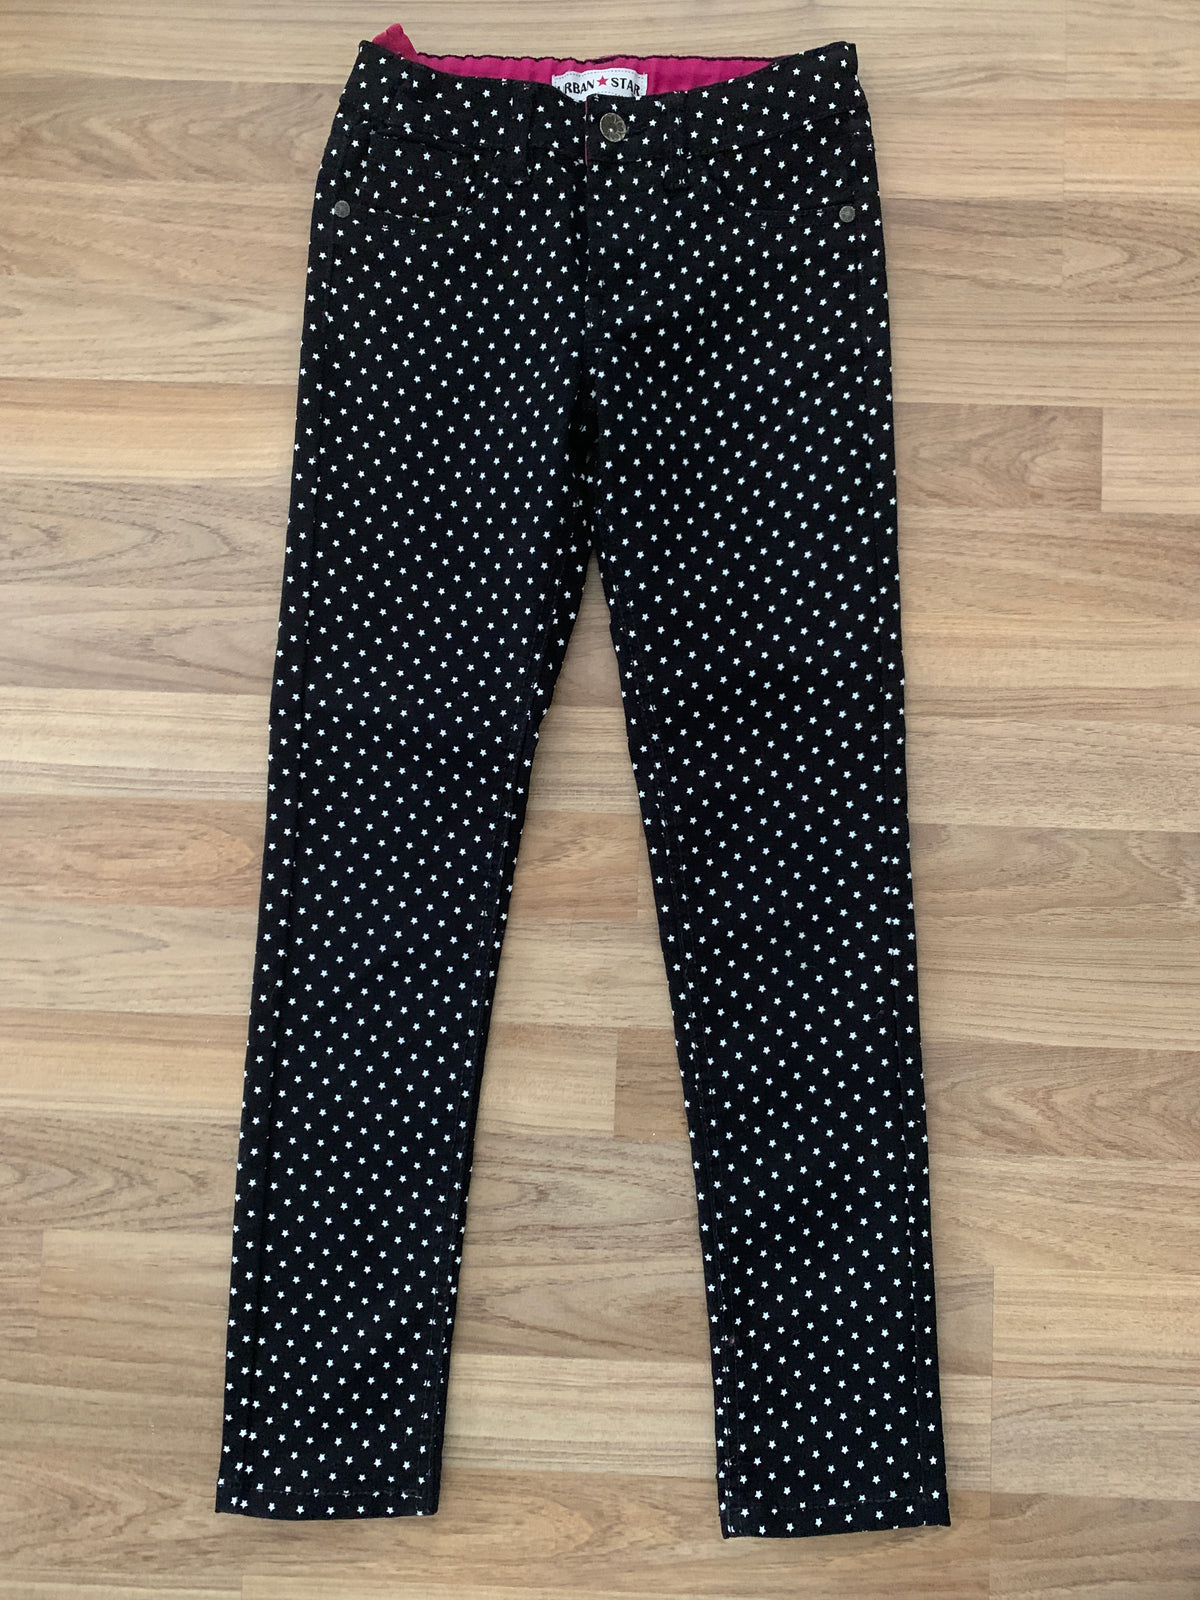 Star-Print Pants (Girls Size 10)